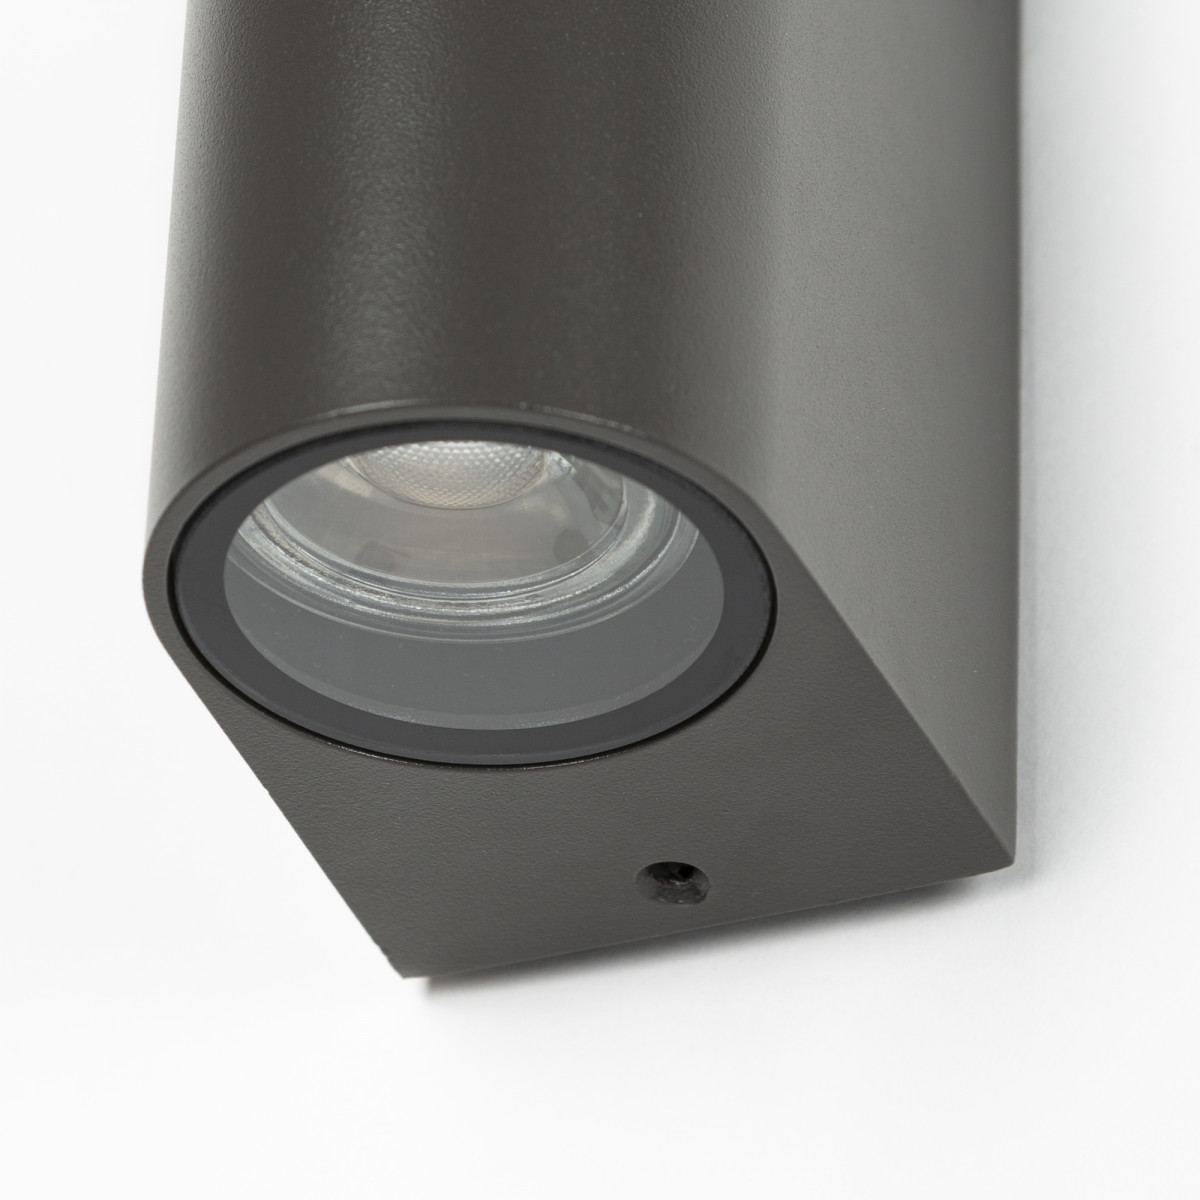 Wandspot Flash, antraciet up en downlighter van KS Verlichting, moderne wandverlichting voor buiten, perfect als gevelspot, gevelverlichting